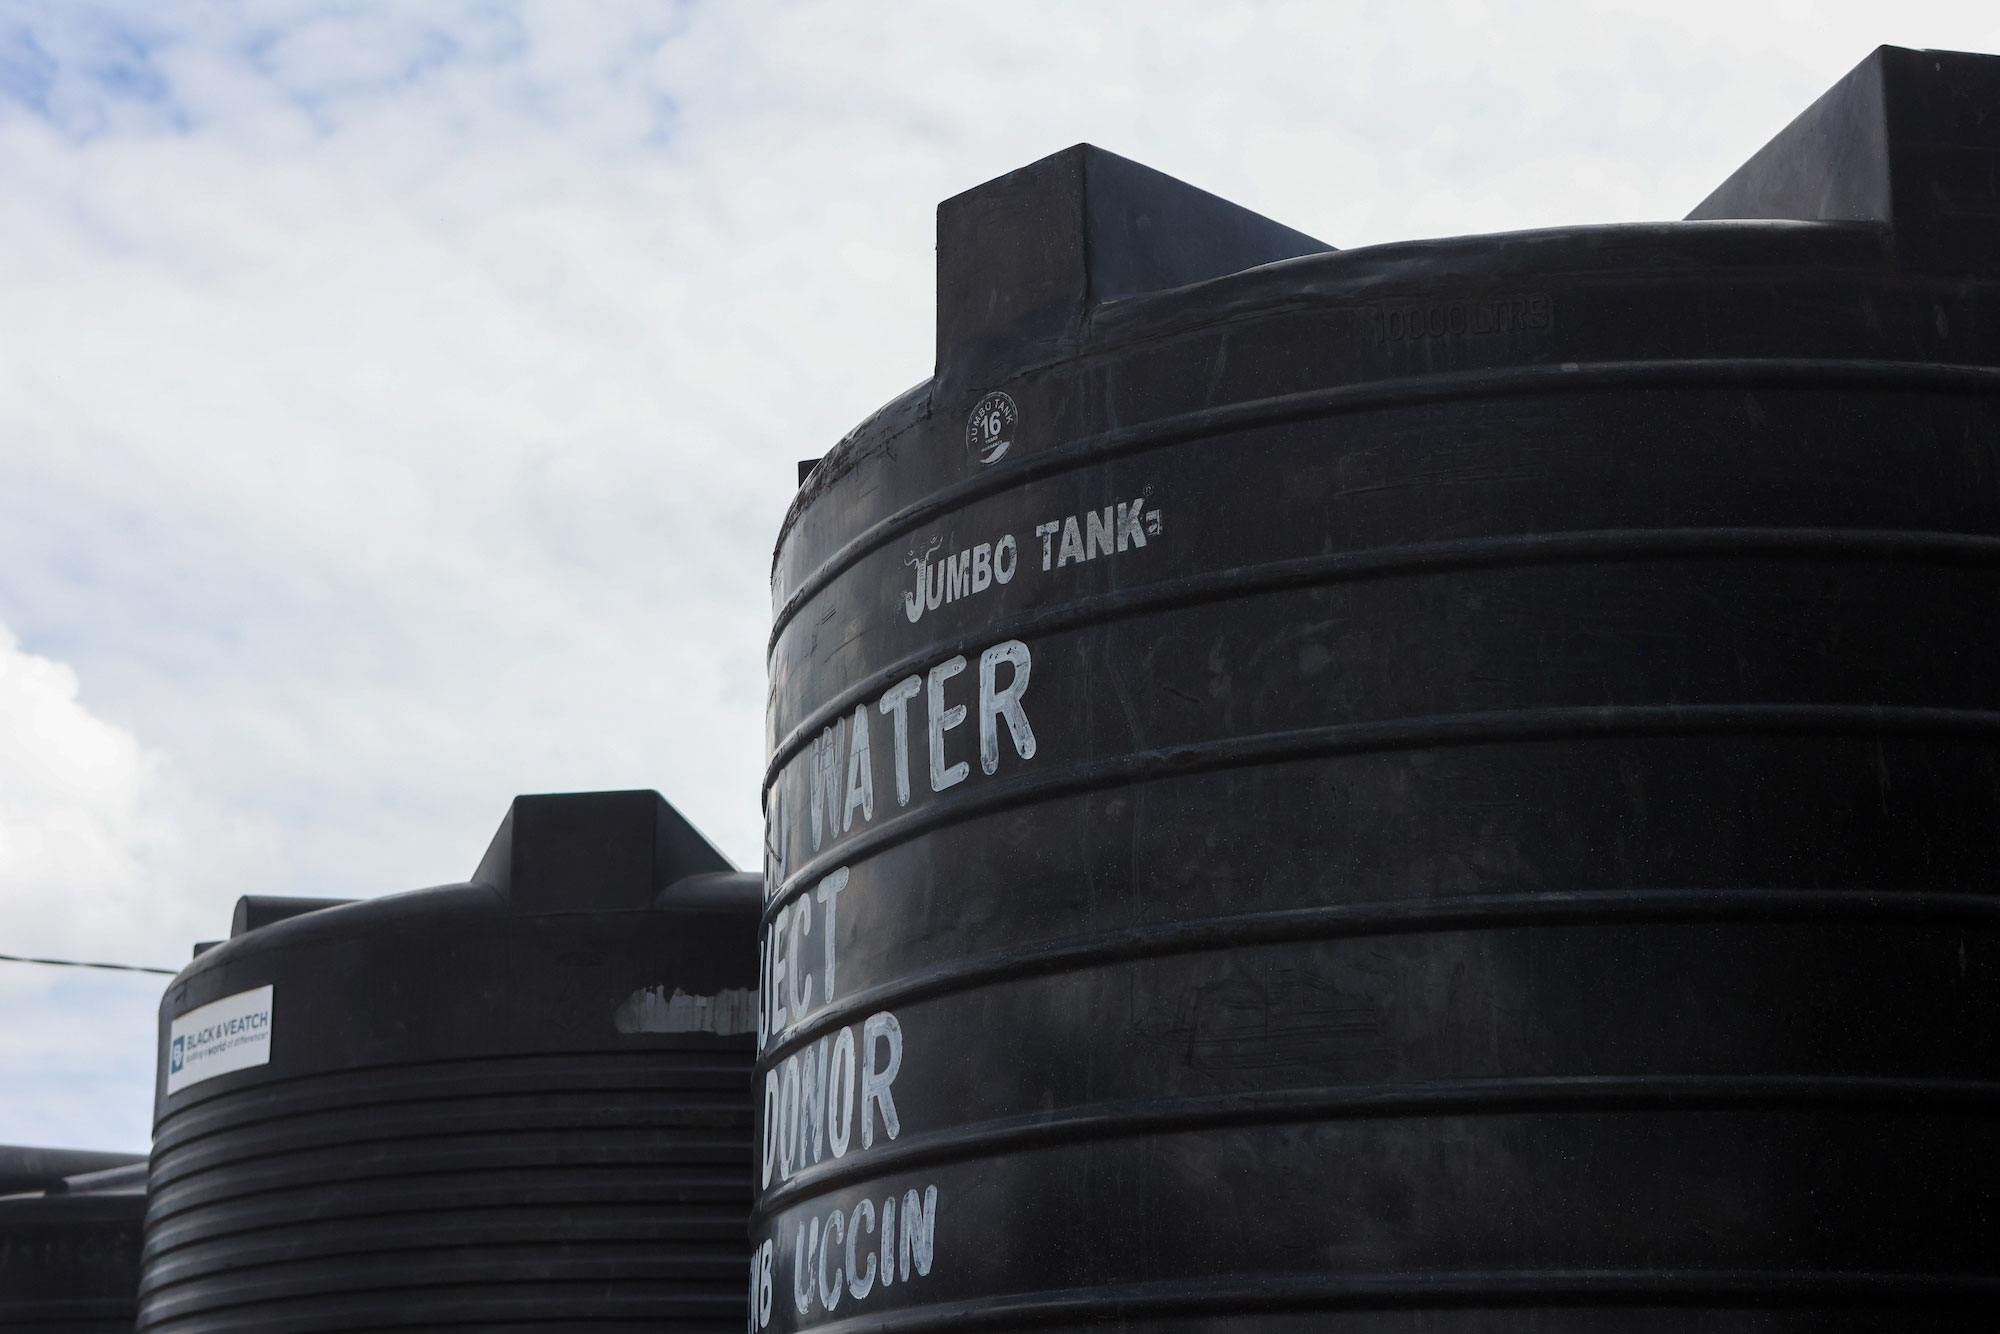 Two large black water tanks